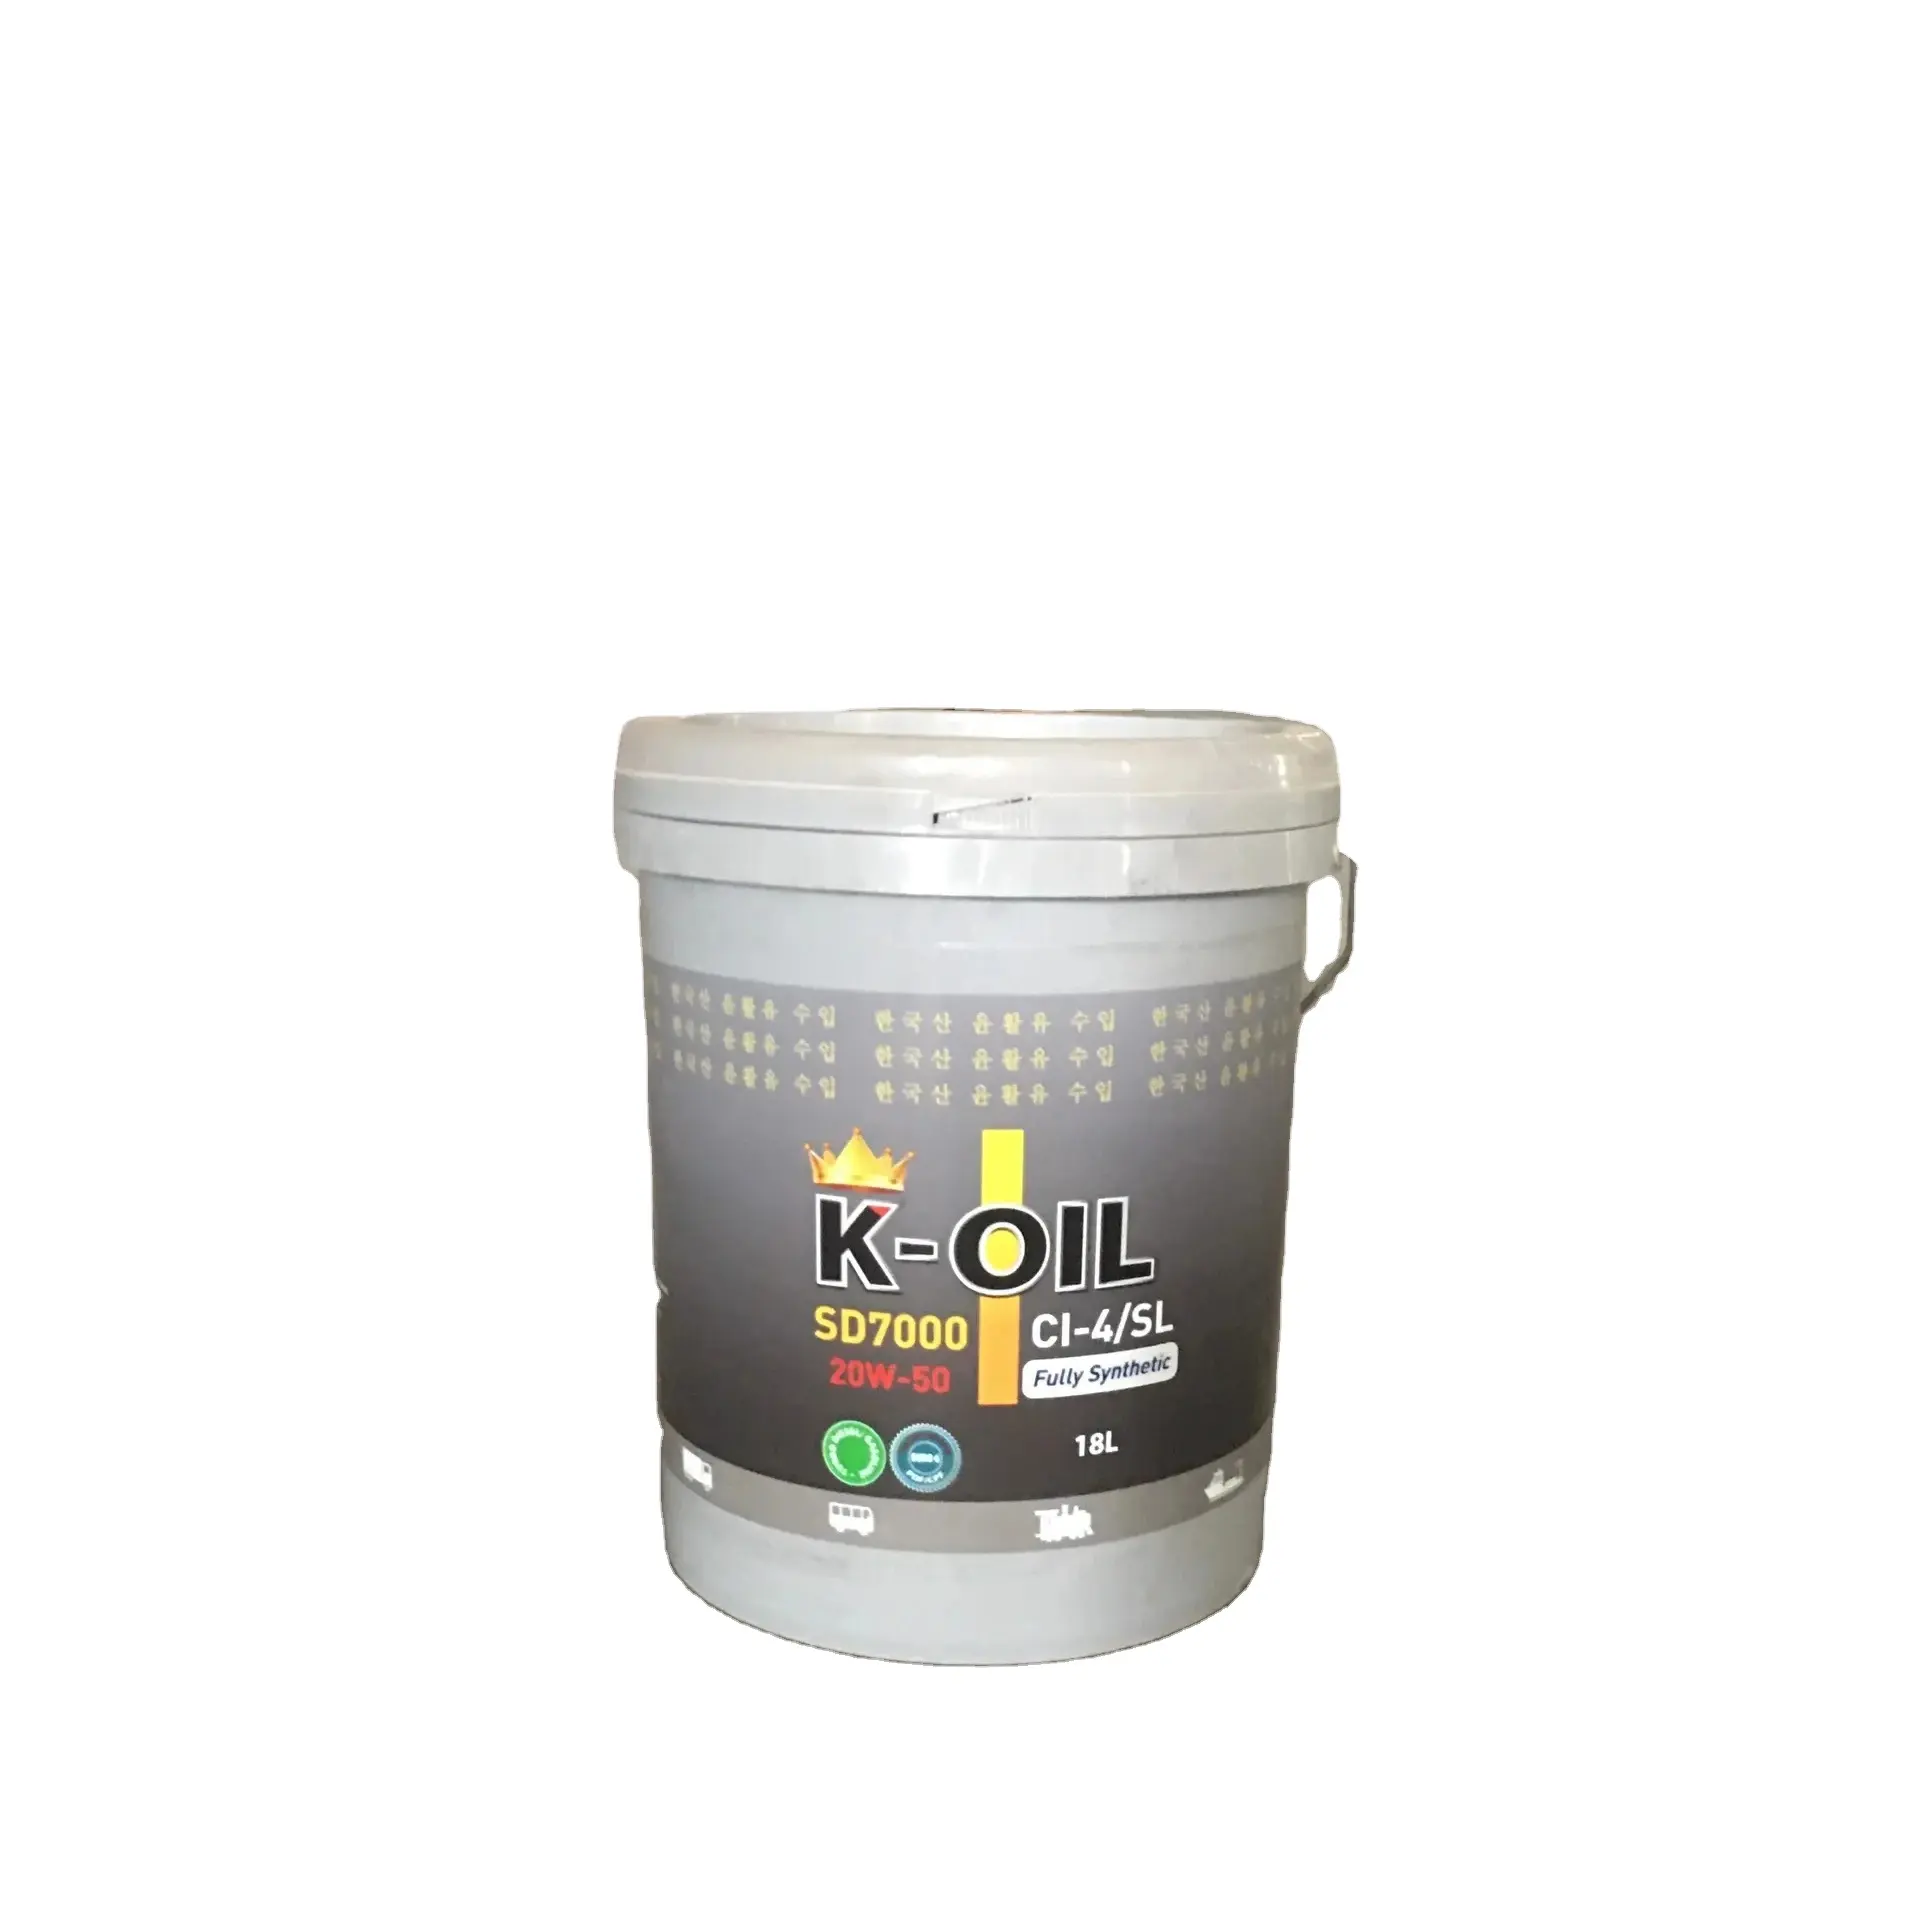 K-Olie Sd7000 15w40/20w50 CI-4/Sl, "Volledig Synthetische Smeermiddelen" Basisoliegroep 3 En Goedkope Prijs Smeermiddel Gemaakt In Vietnam